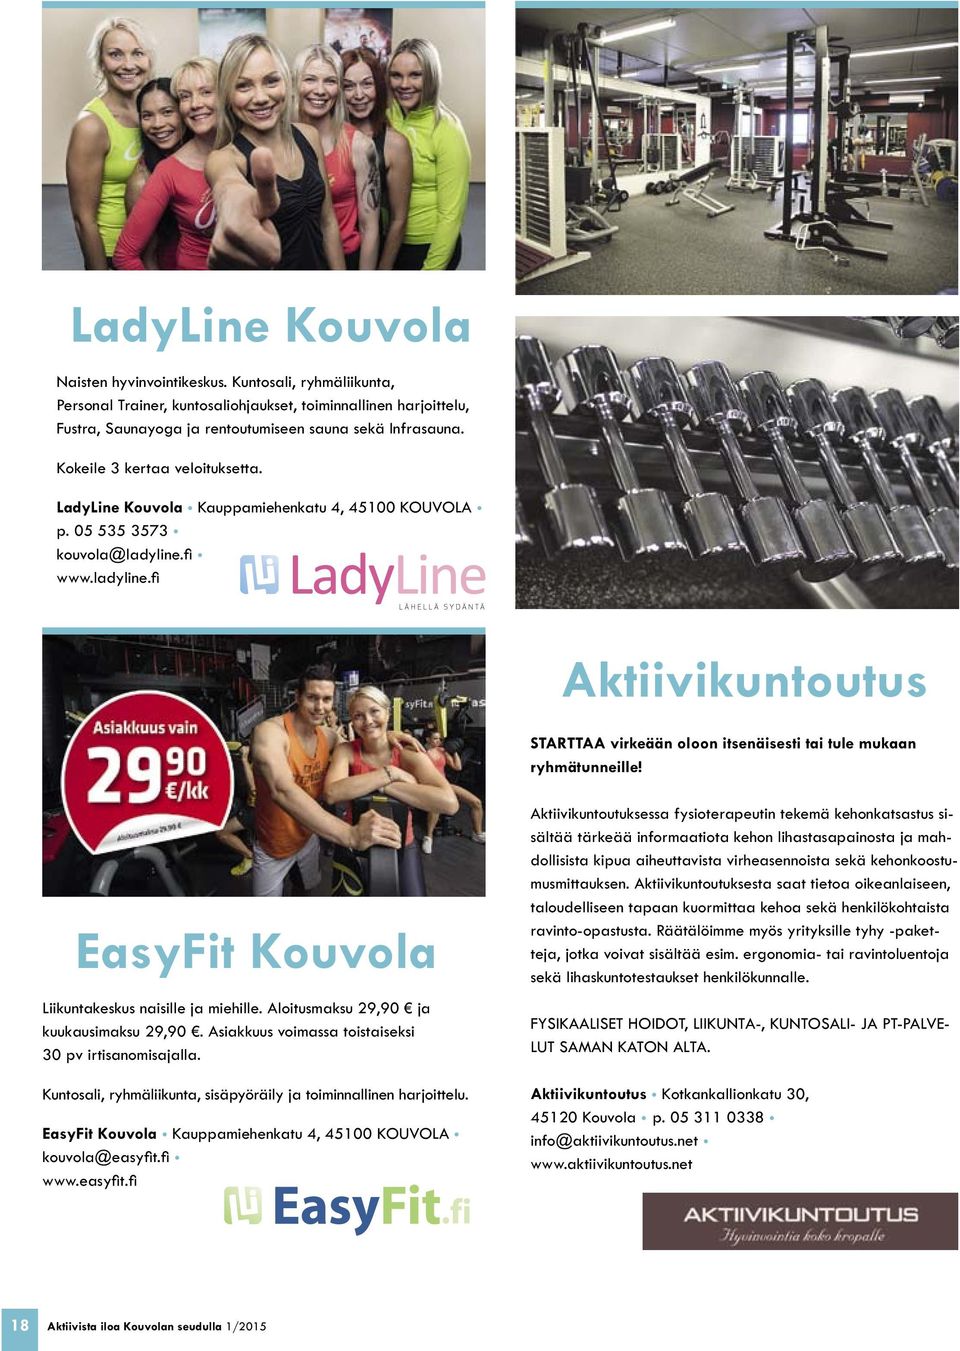 fi www.ladyline.fi Aktiivikuntoutus STARTTAA virkeään oloon itsenäisesti tai tule mukaan ryhmätunneille! EasyFit Kouvola Liikuntakeskus naisille ja miehille. Aloitusmaksu 29,90 ja kuukausimaksu 29,90.